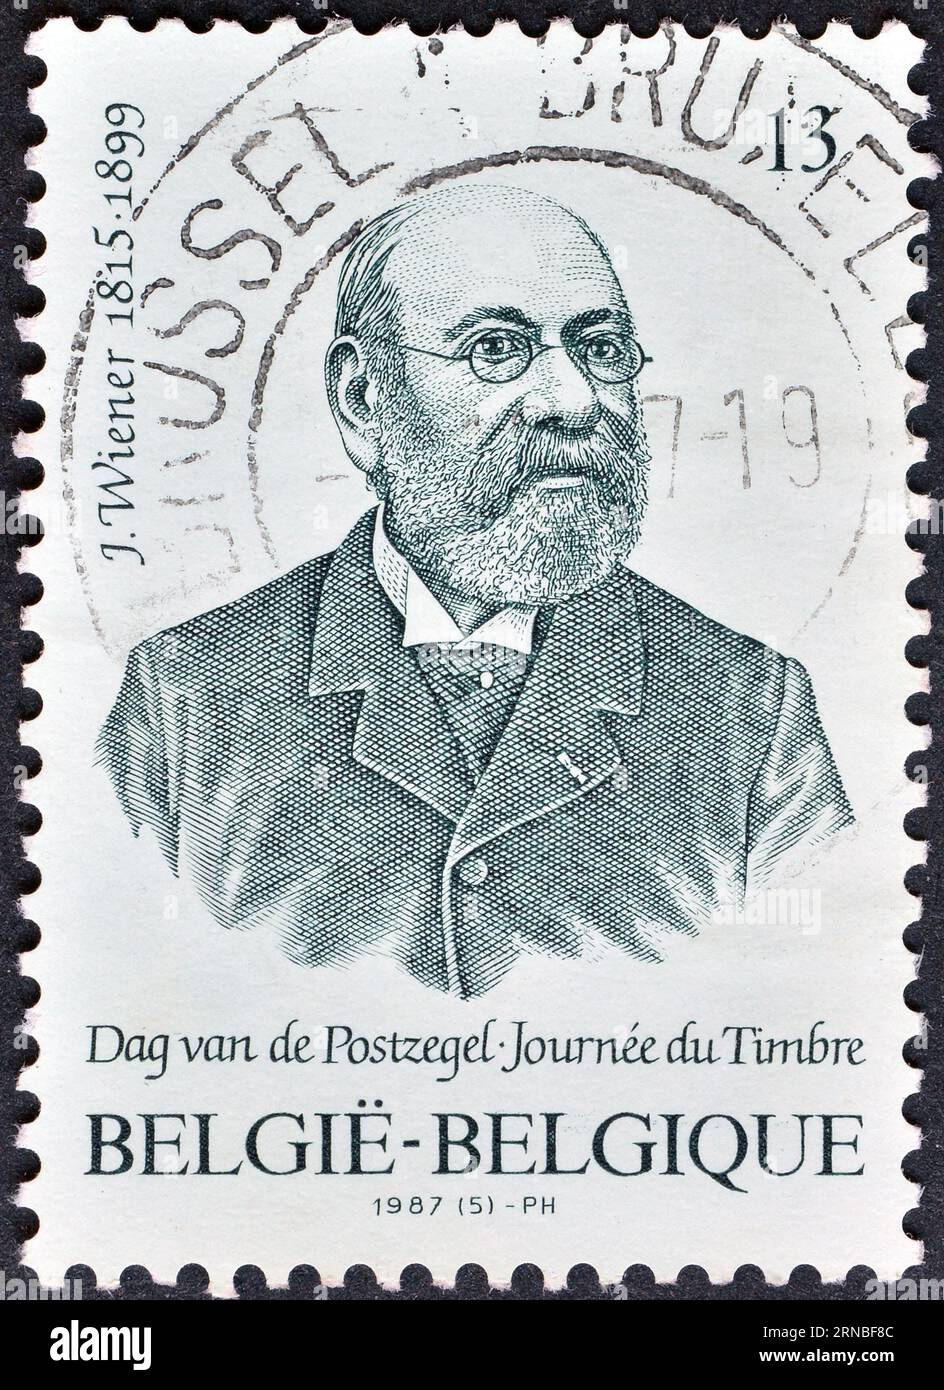 Von Belgien gedruckte Briefmarke, die Jacob Wiener (1815-1899) zeigt - Graveur, um 1987. Stockfoto